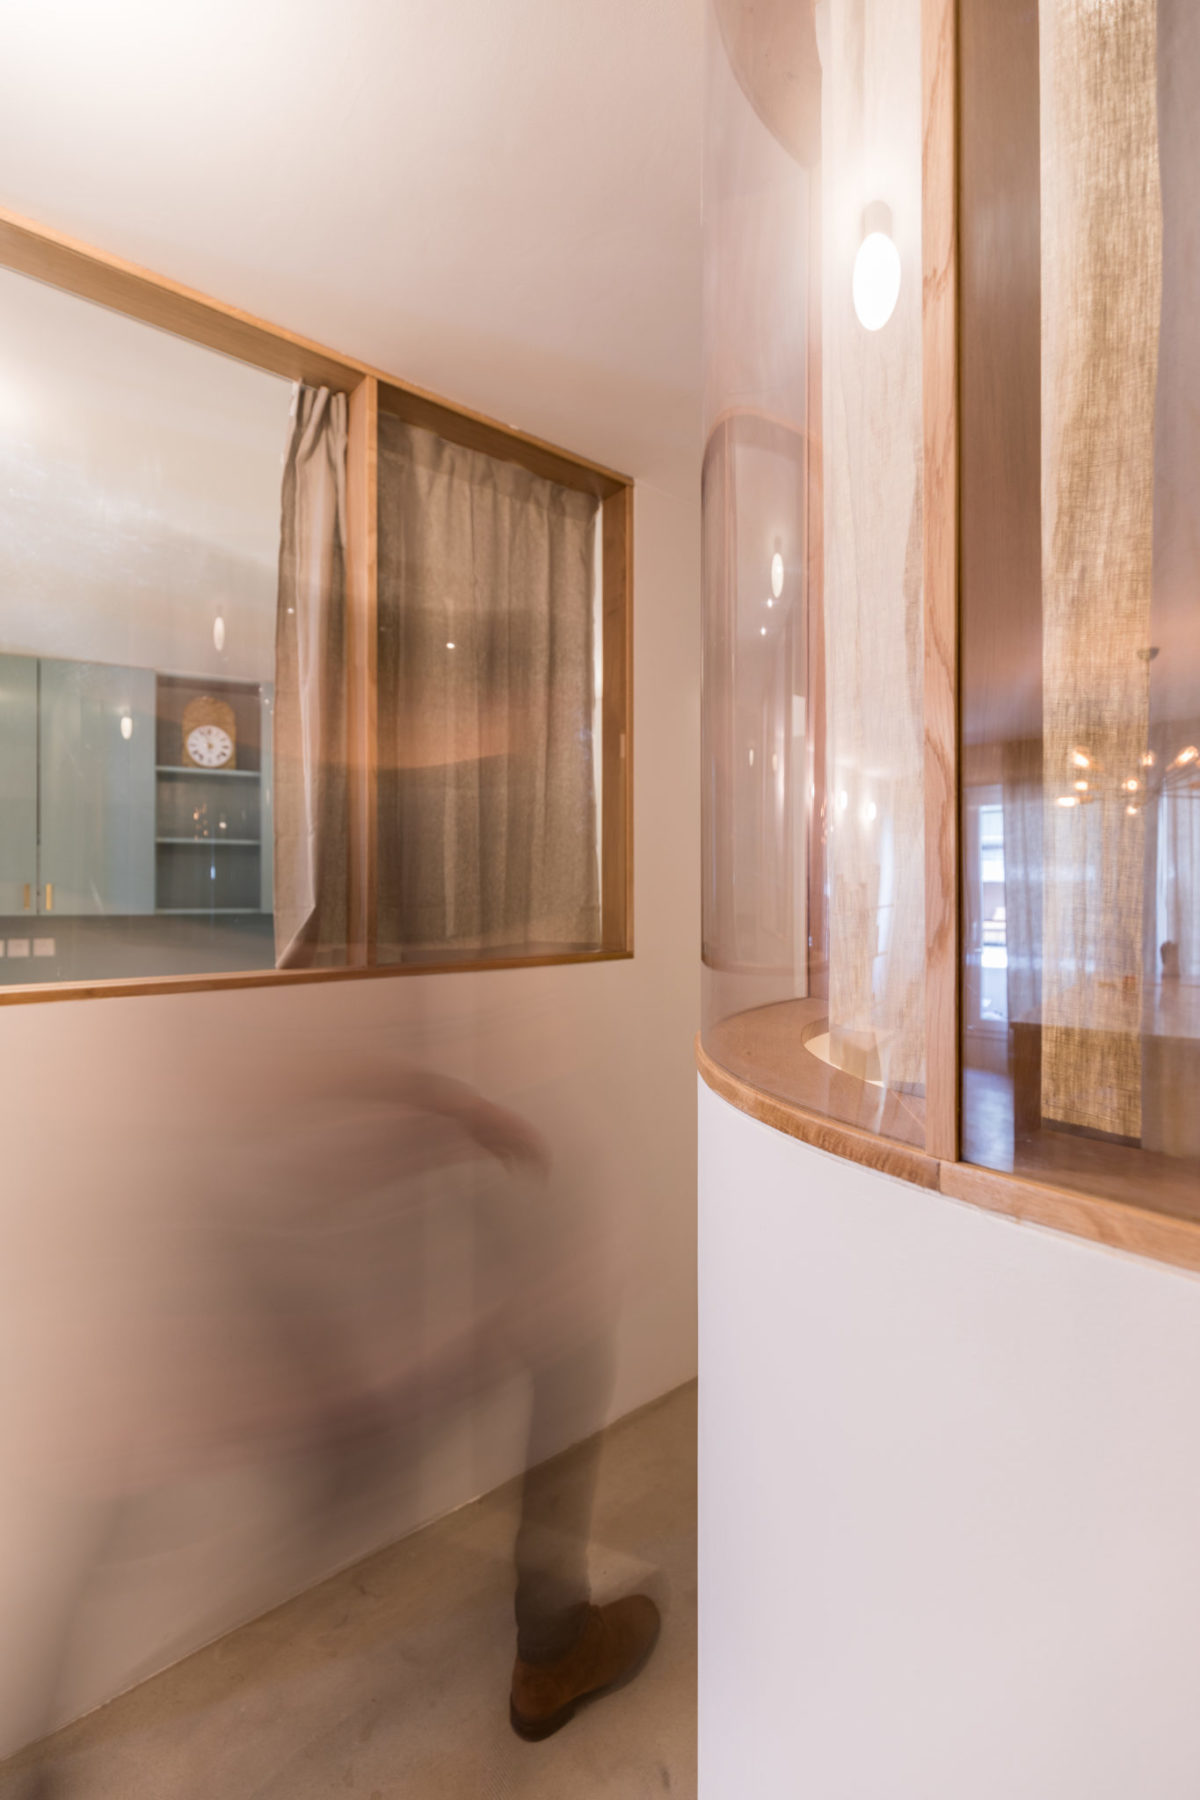 Cloison intérieure en verre bombé avec châssis en chêne. Inspiré par Alvaar Aalto